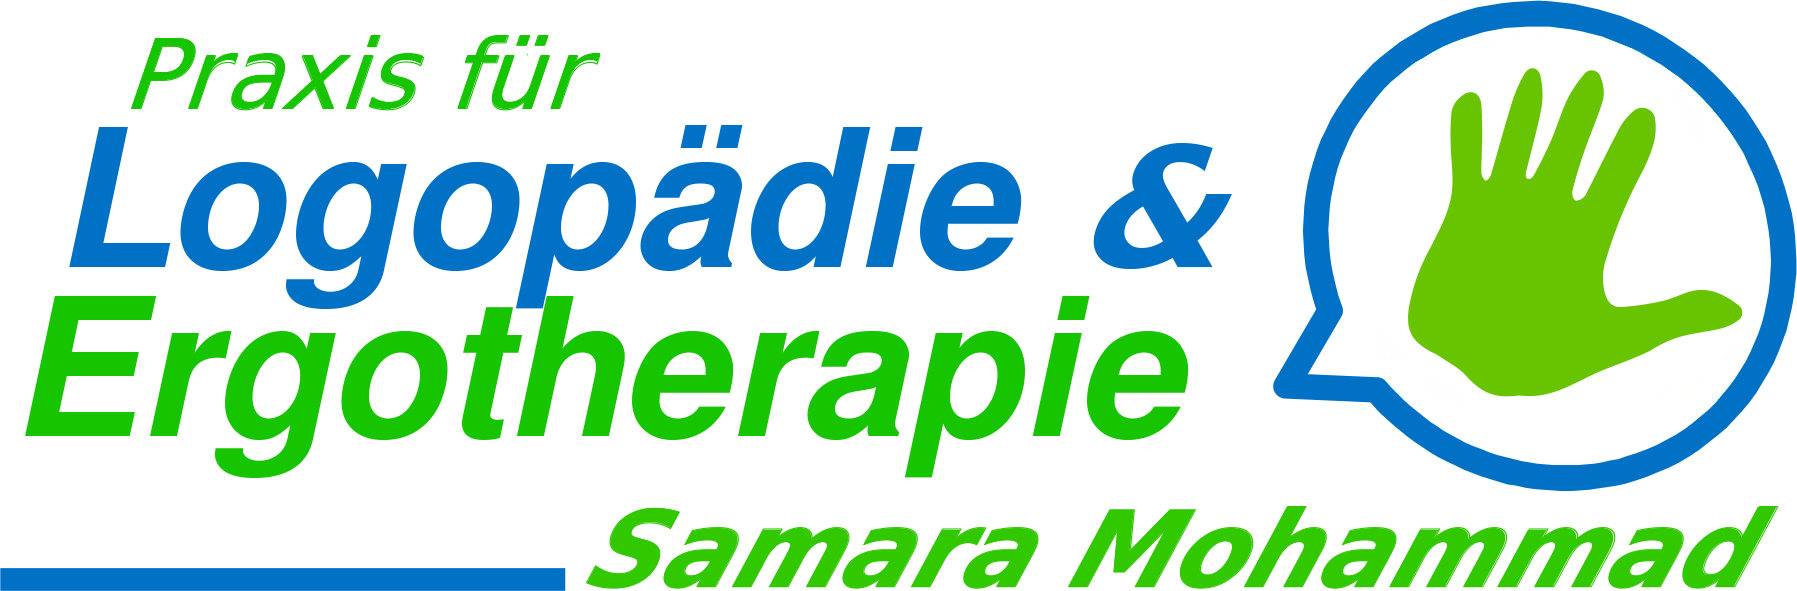 Praxis für Logopädie und Ergotherapie Samara Mohammad